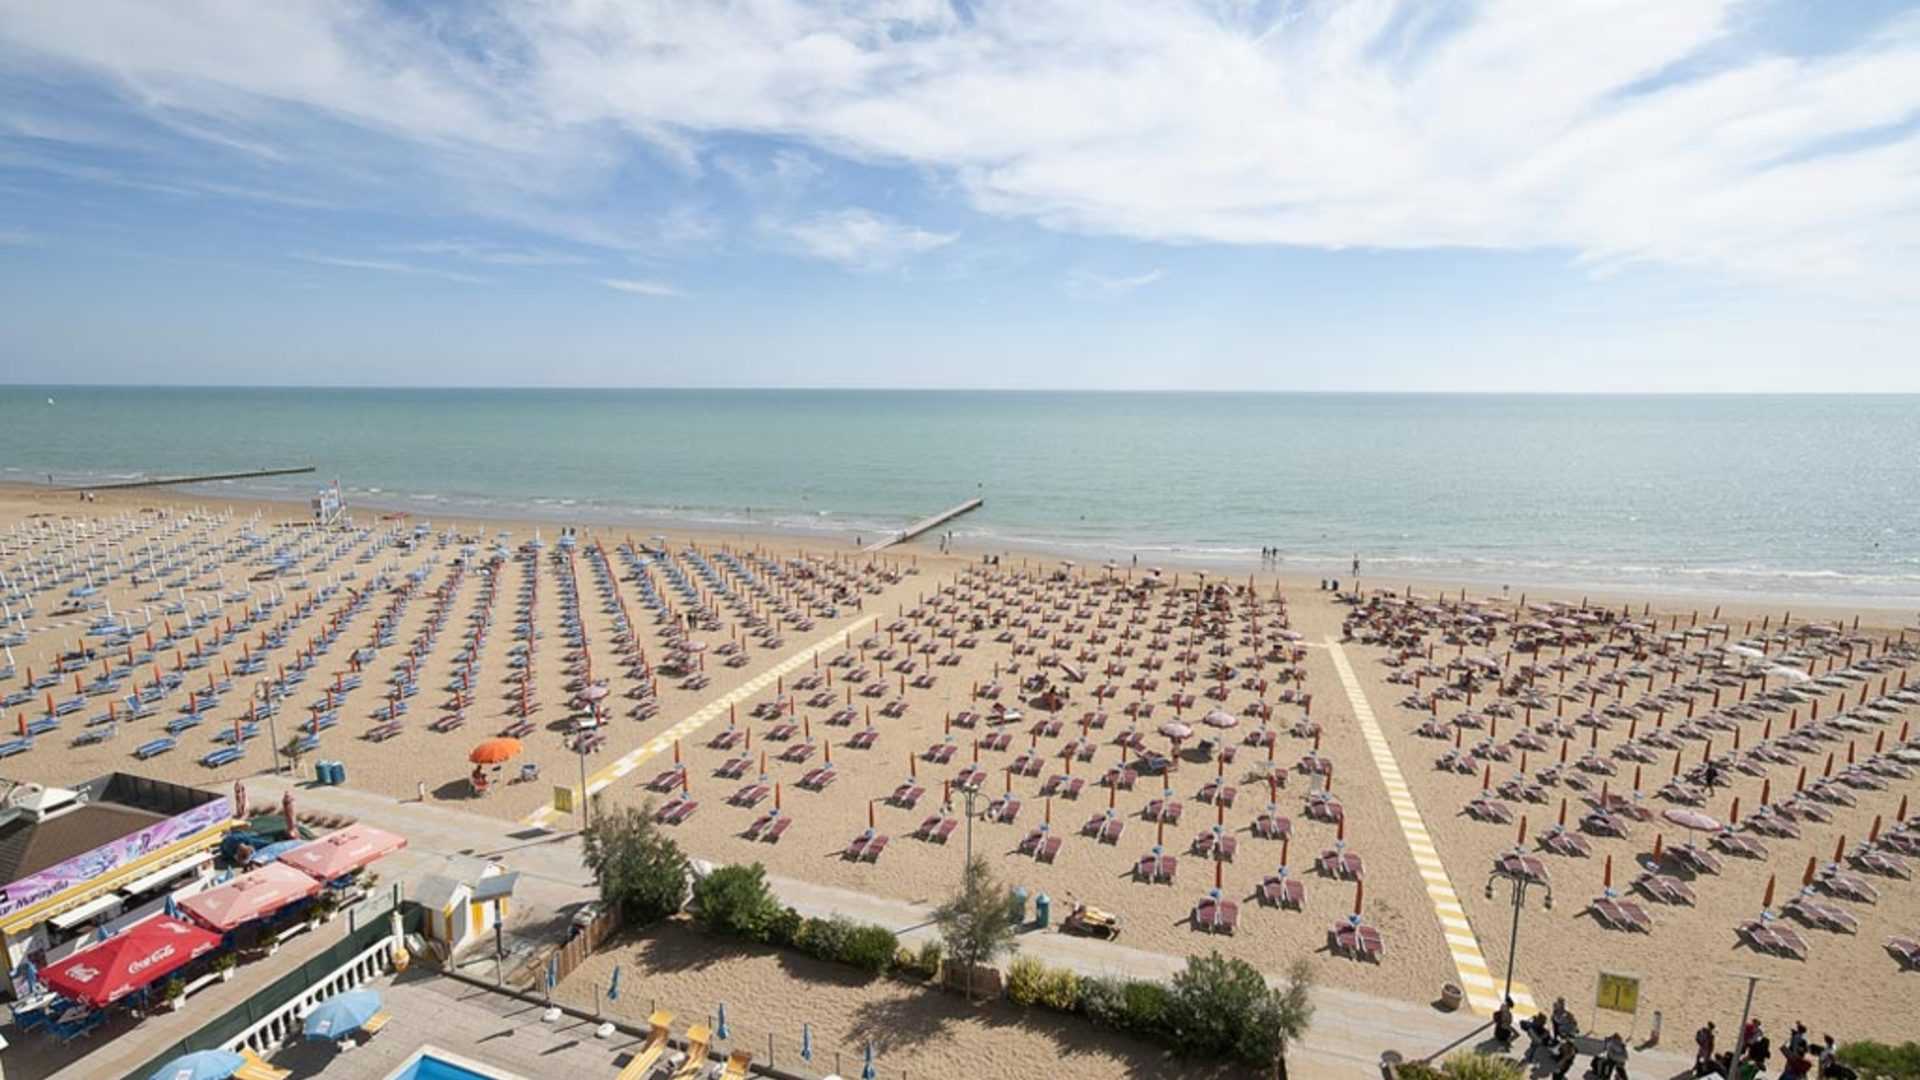 Отдых в лидо ди езоло — отзывы о курорте: достопримечательности и шоппинг, пляжи, отели и экскурсии по италии в 2019 году